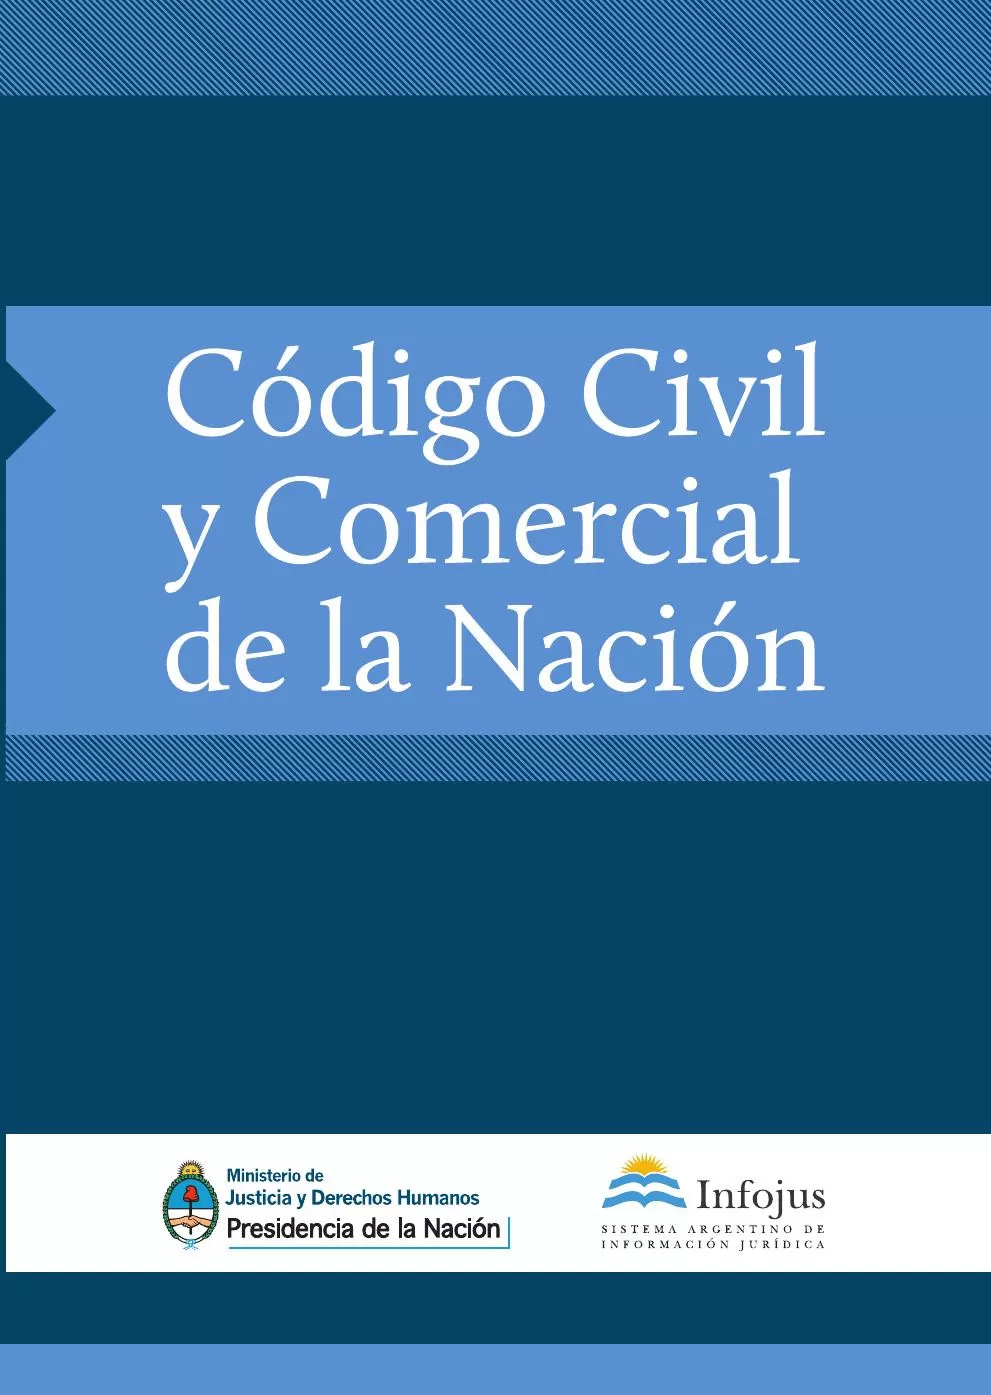 Gobierno de Argentina - Cdigo Civil